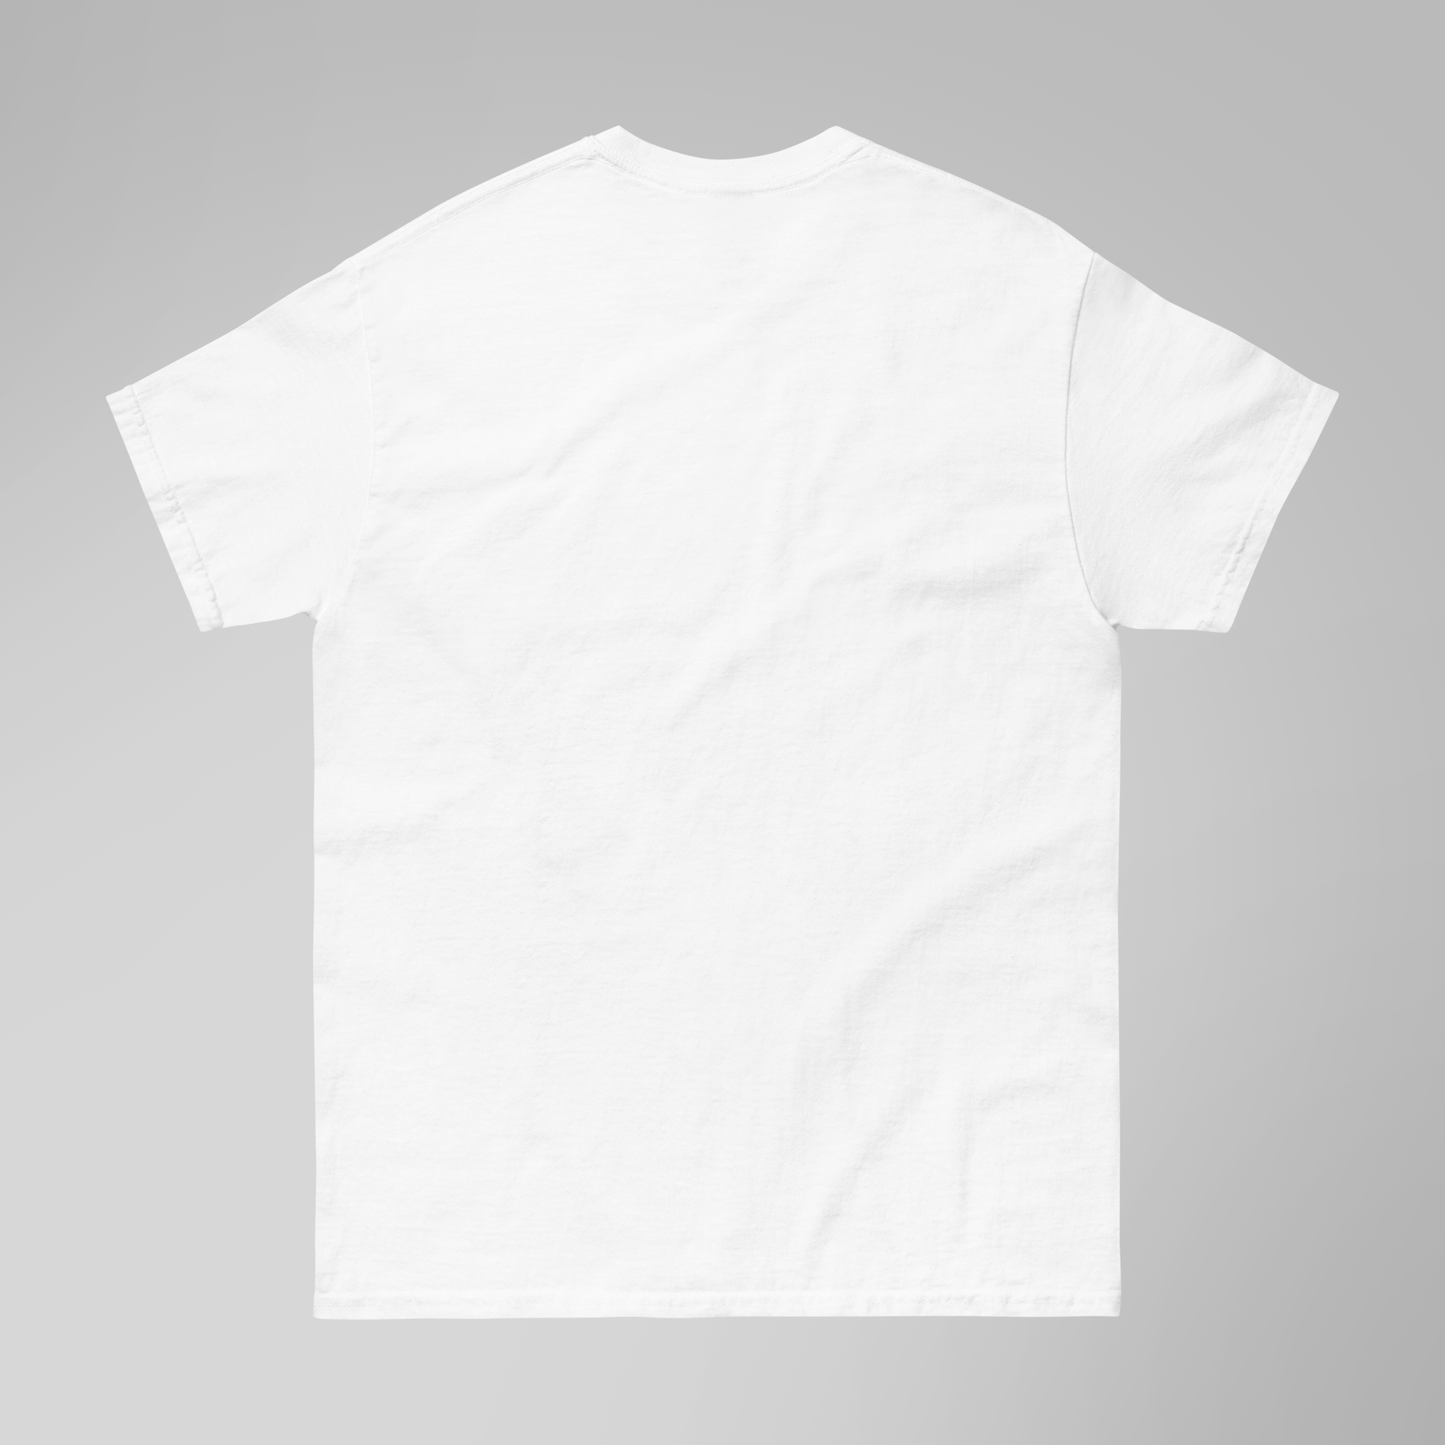 Tee-shirt blanc Zoro (enfant)